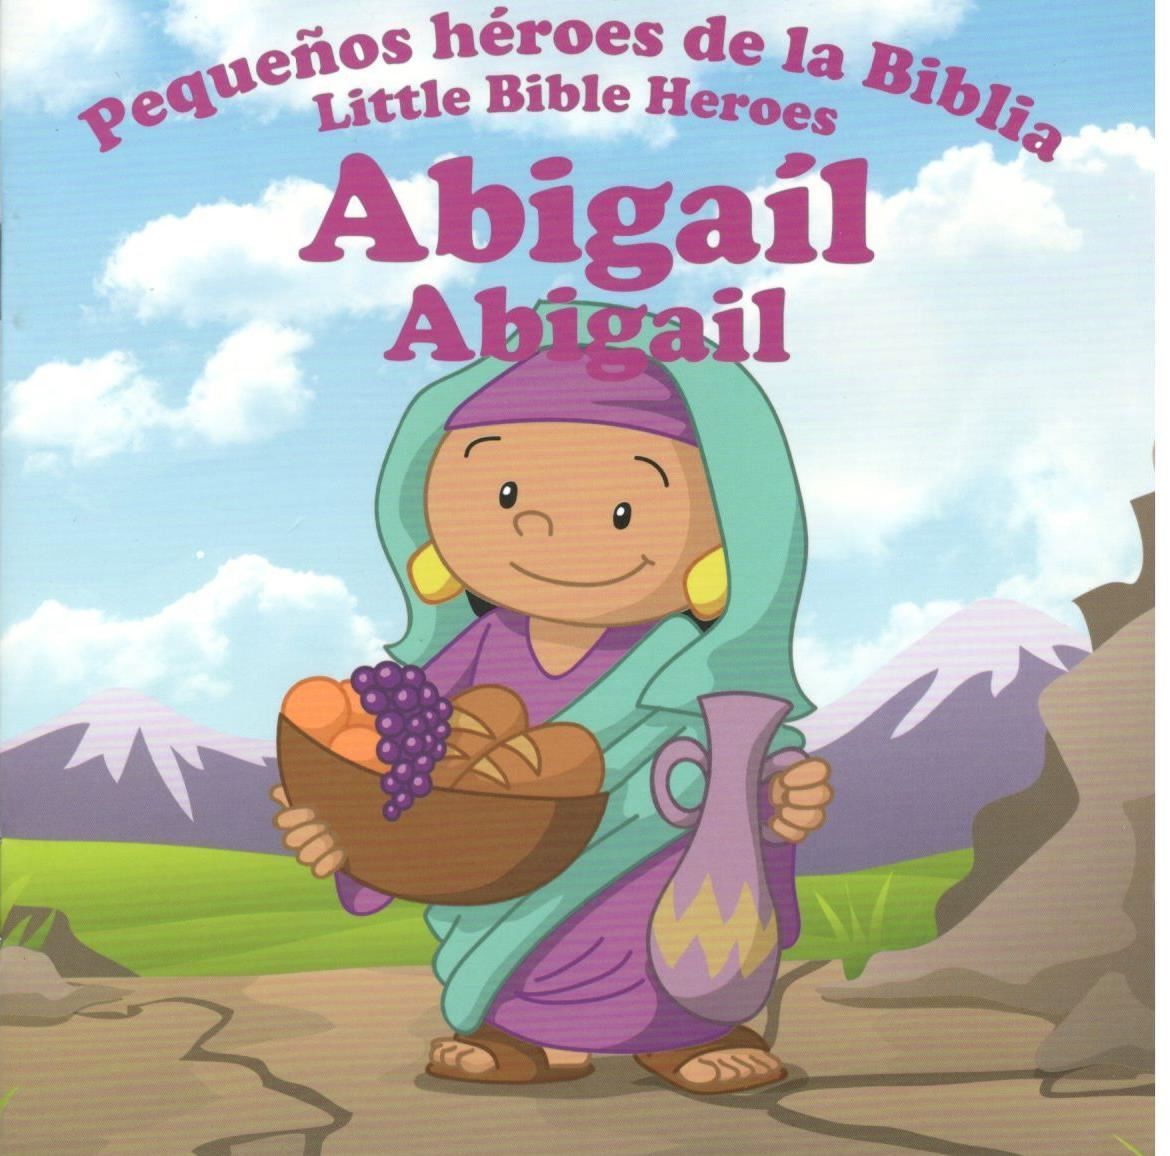 Abigail: Pequeños héroes de la Biblia (bilingüe)